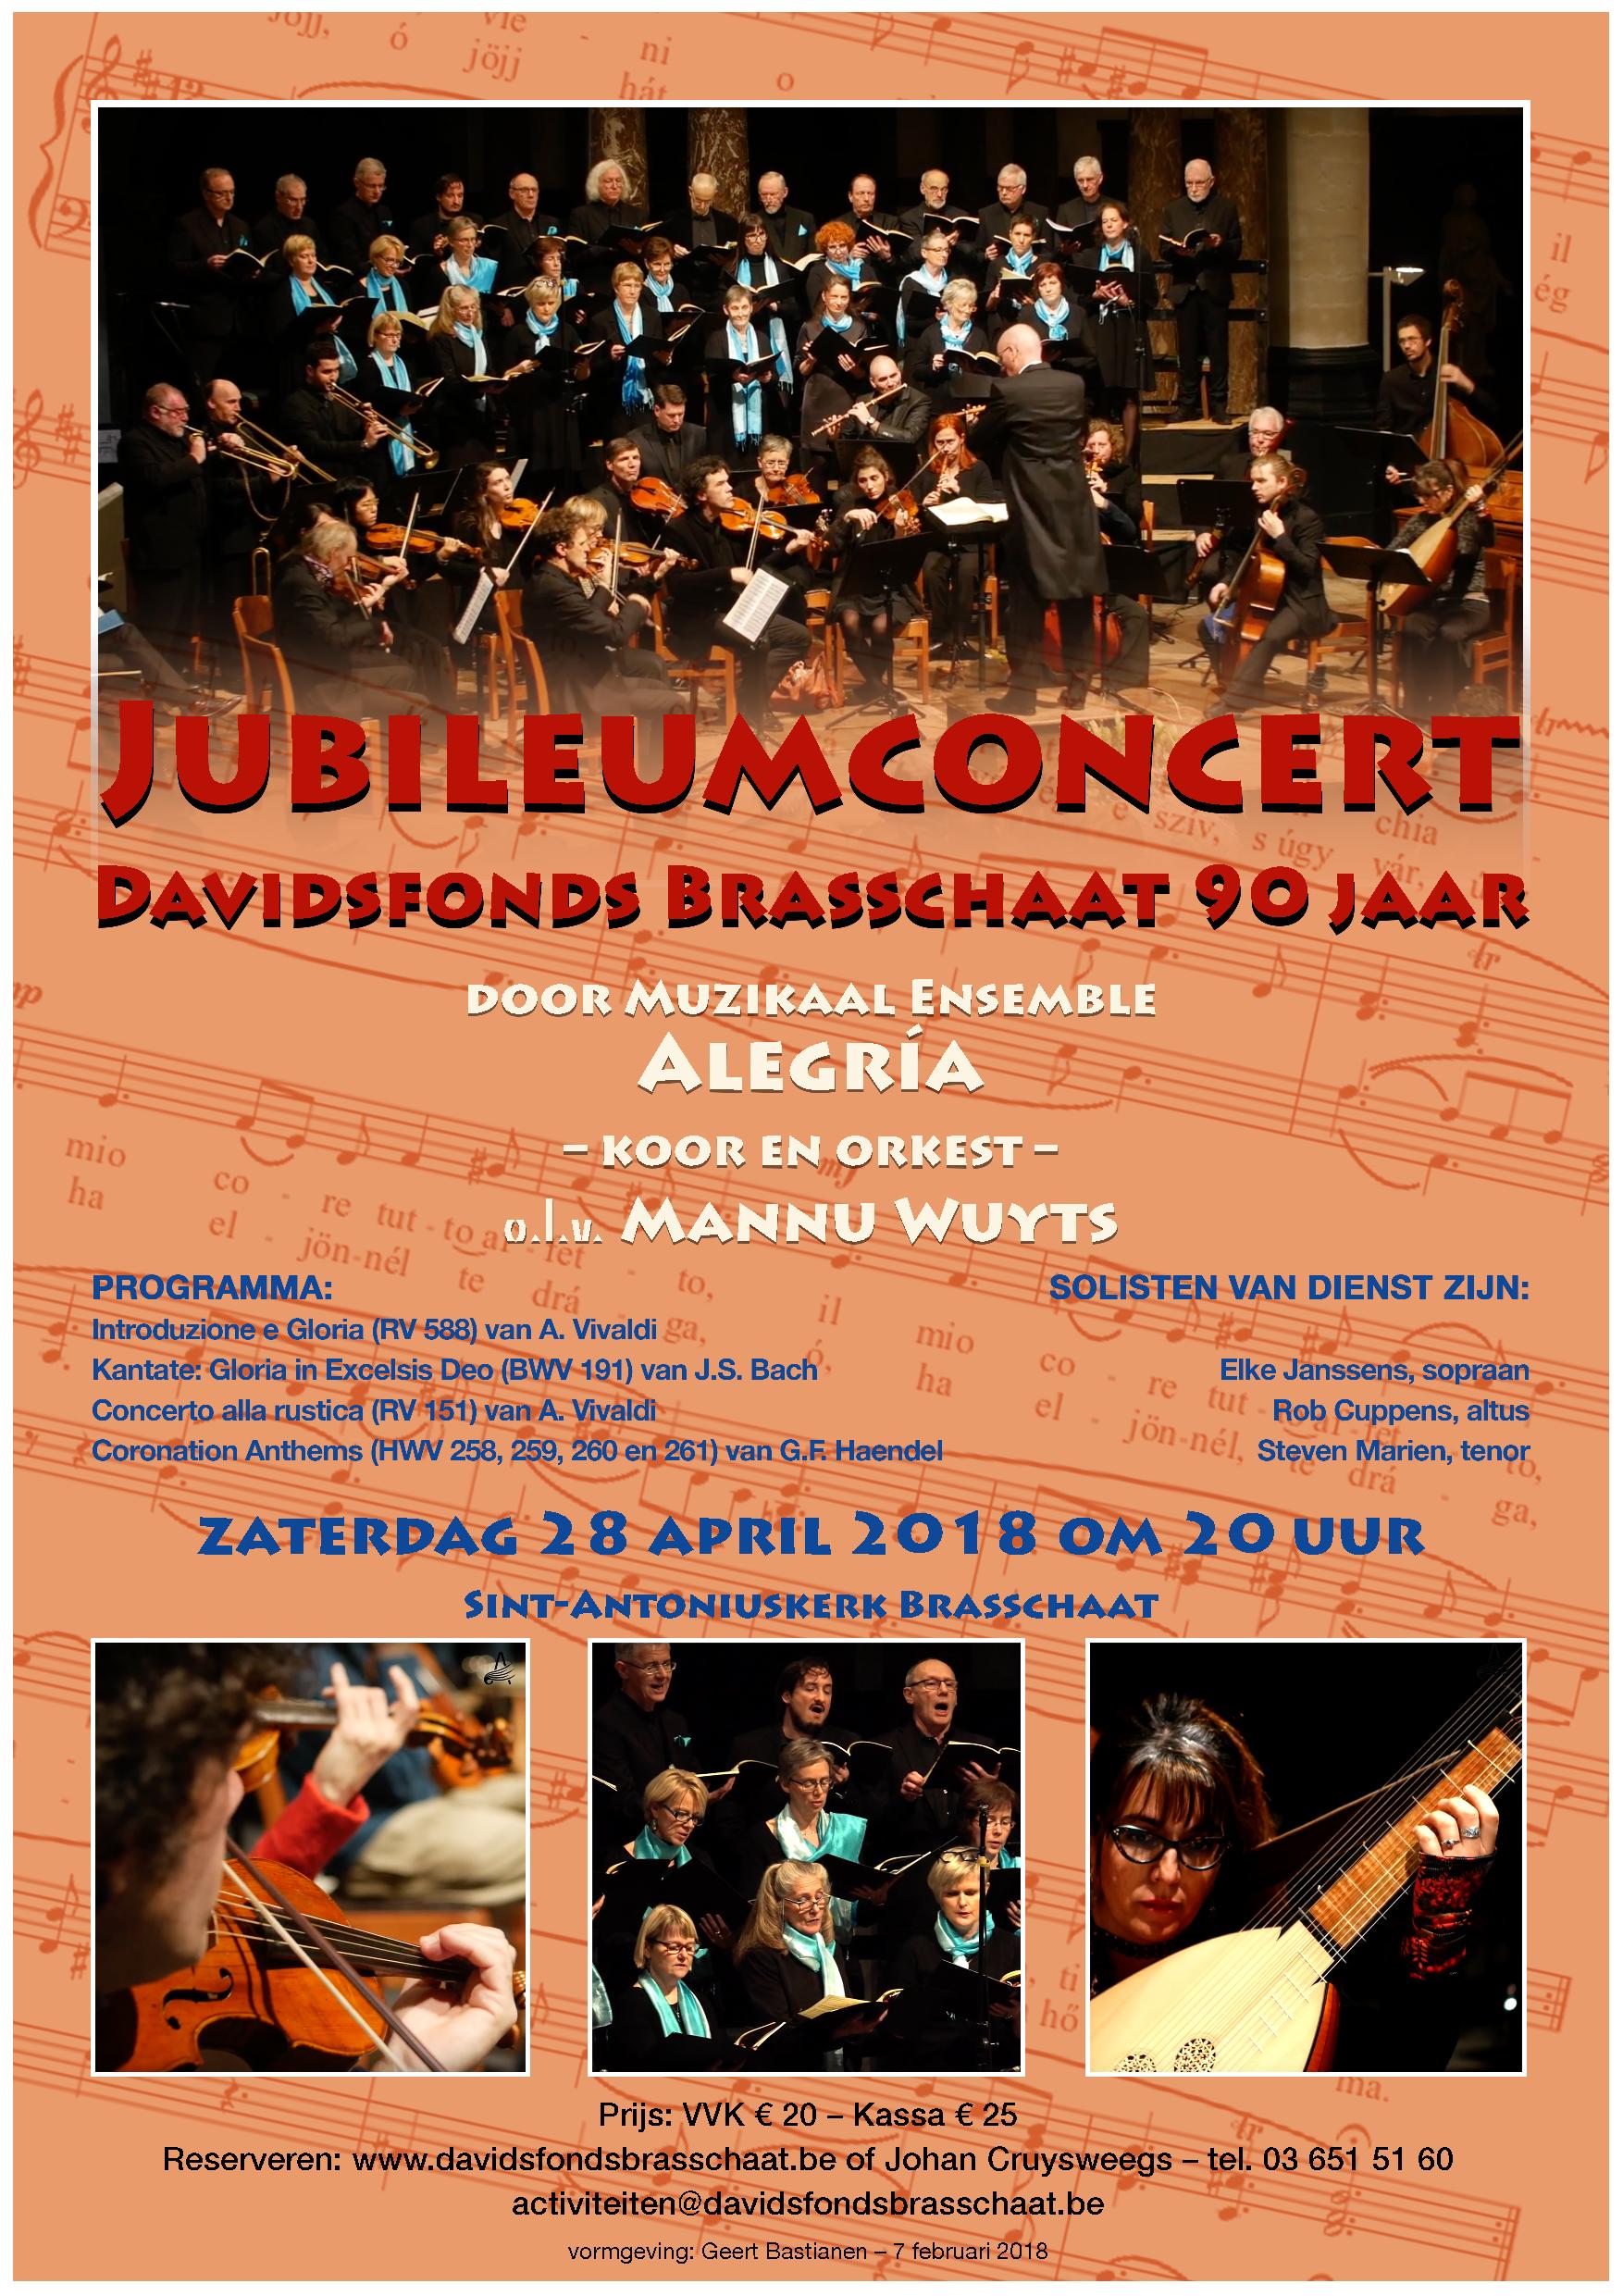 Affiche van het jubileum concert van het Davidsfonds